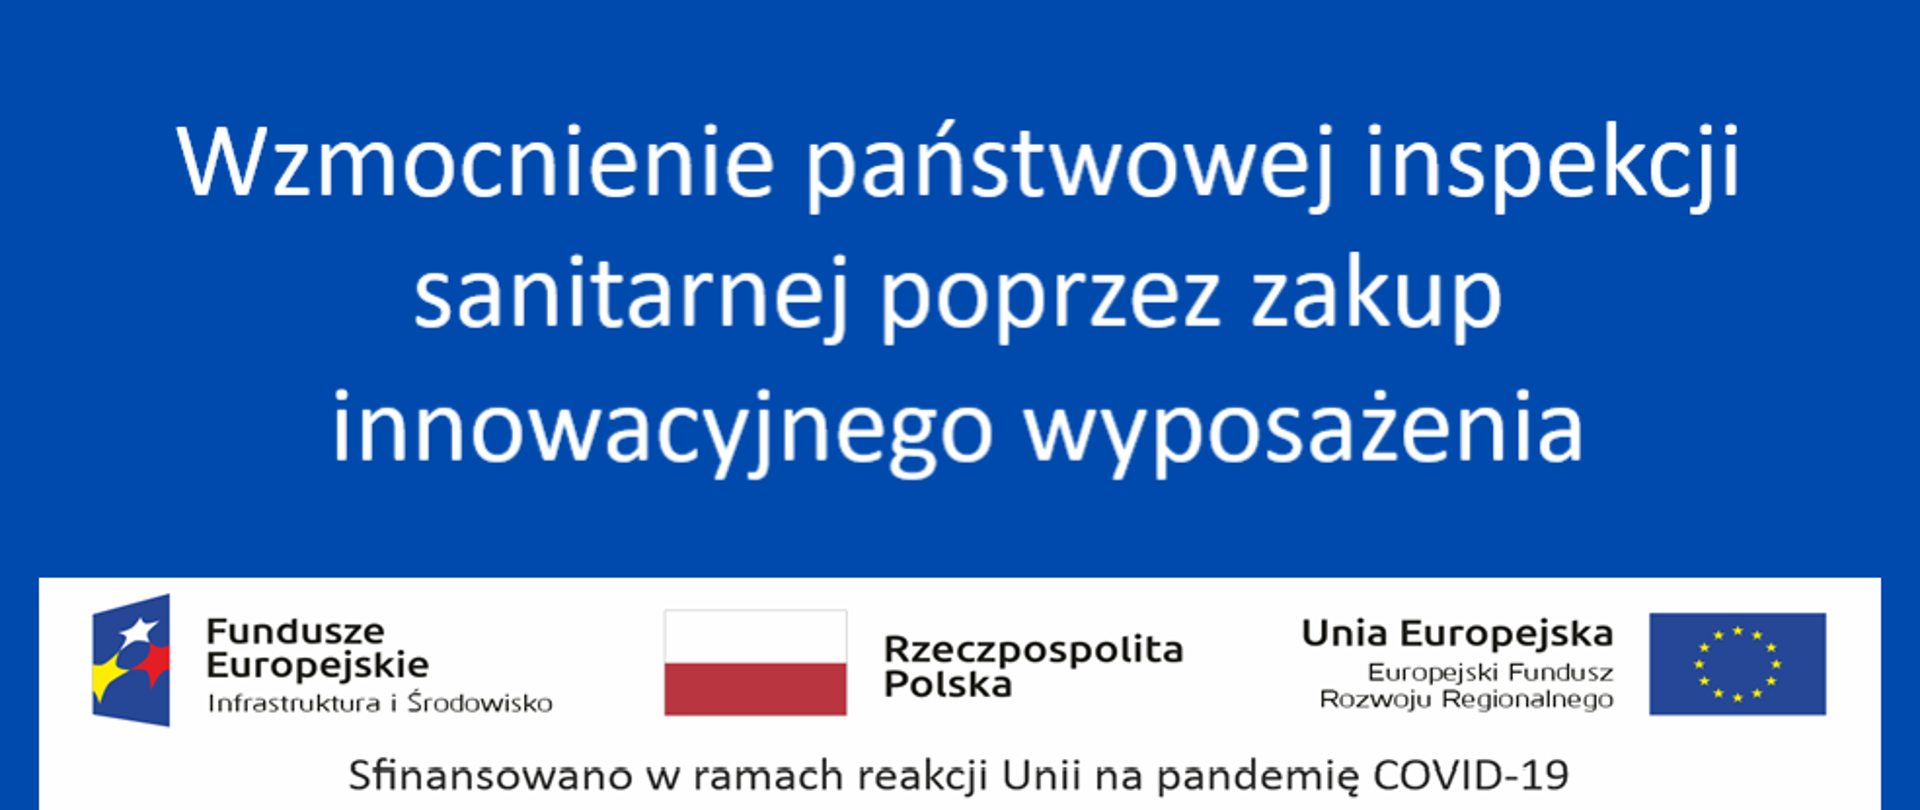 Ikony Rzeczpospolitej Polskiej, Unii Europejskiej i funduszy europejskich oraz nazwa przedsięwzięcia.